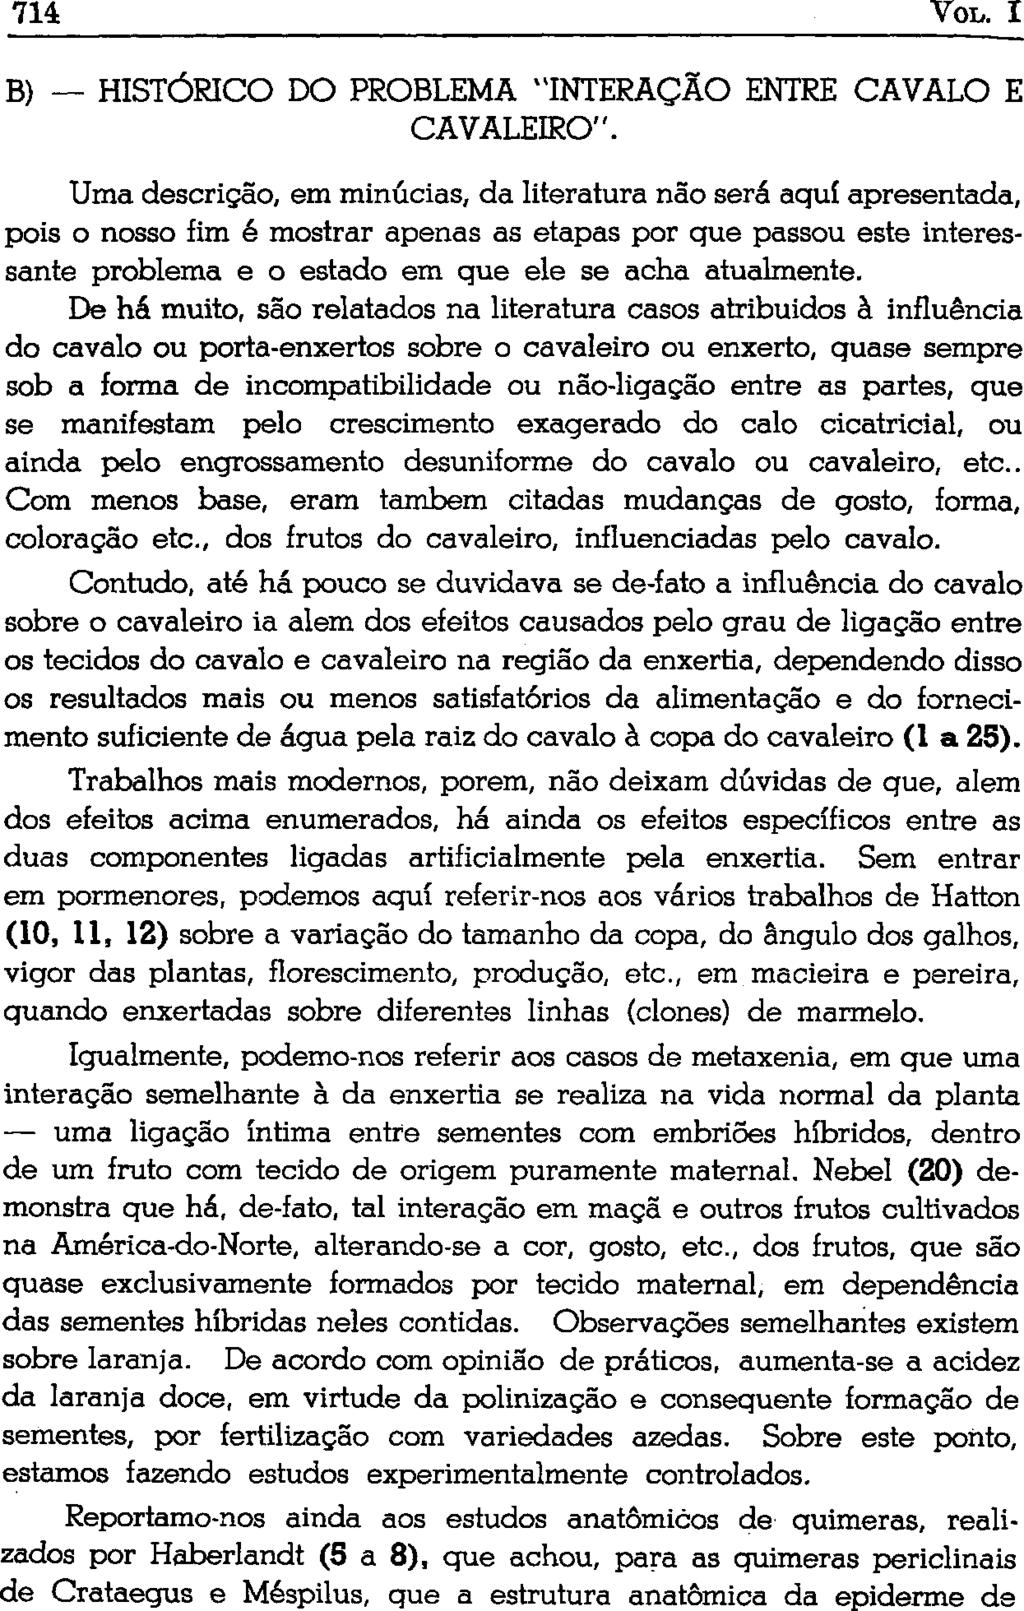 B) HISTÓRICO DO PROBLEMA "INTERAÇÃO ENTRE CAVALO E CAVALEIRO".